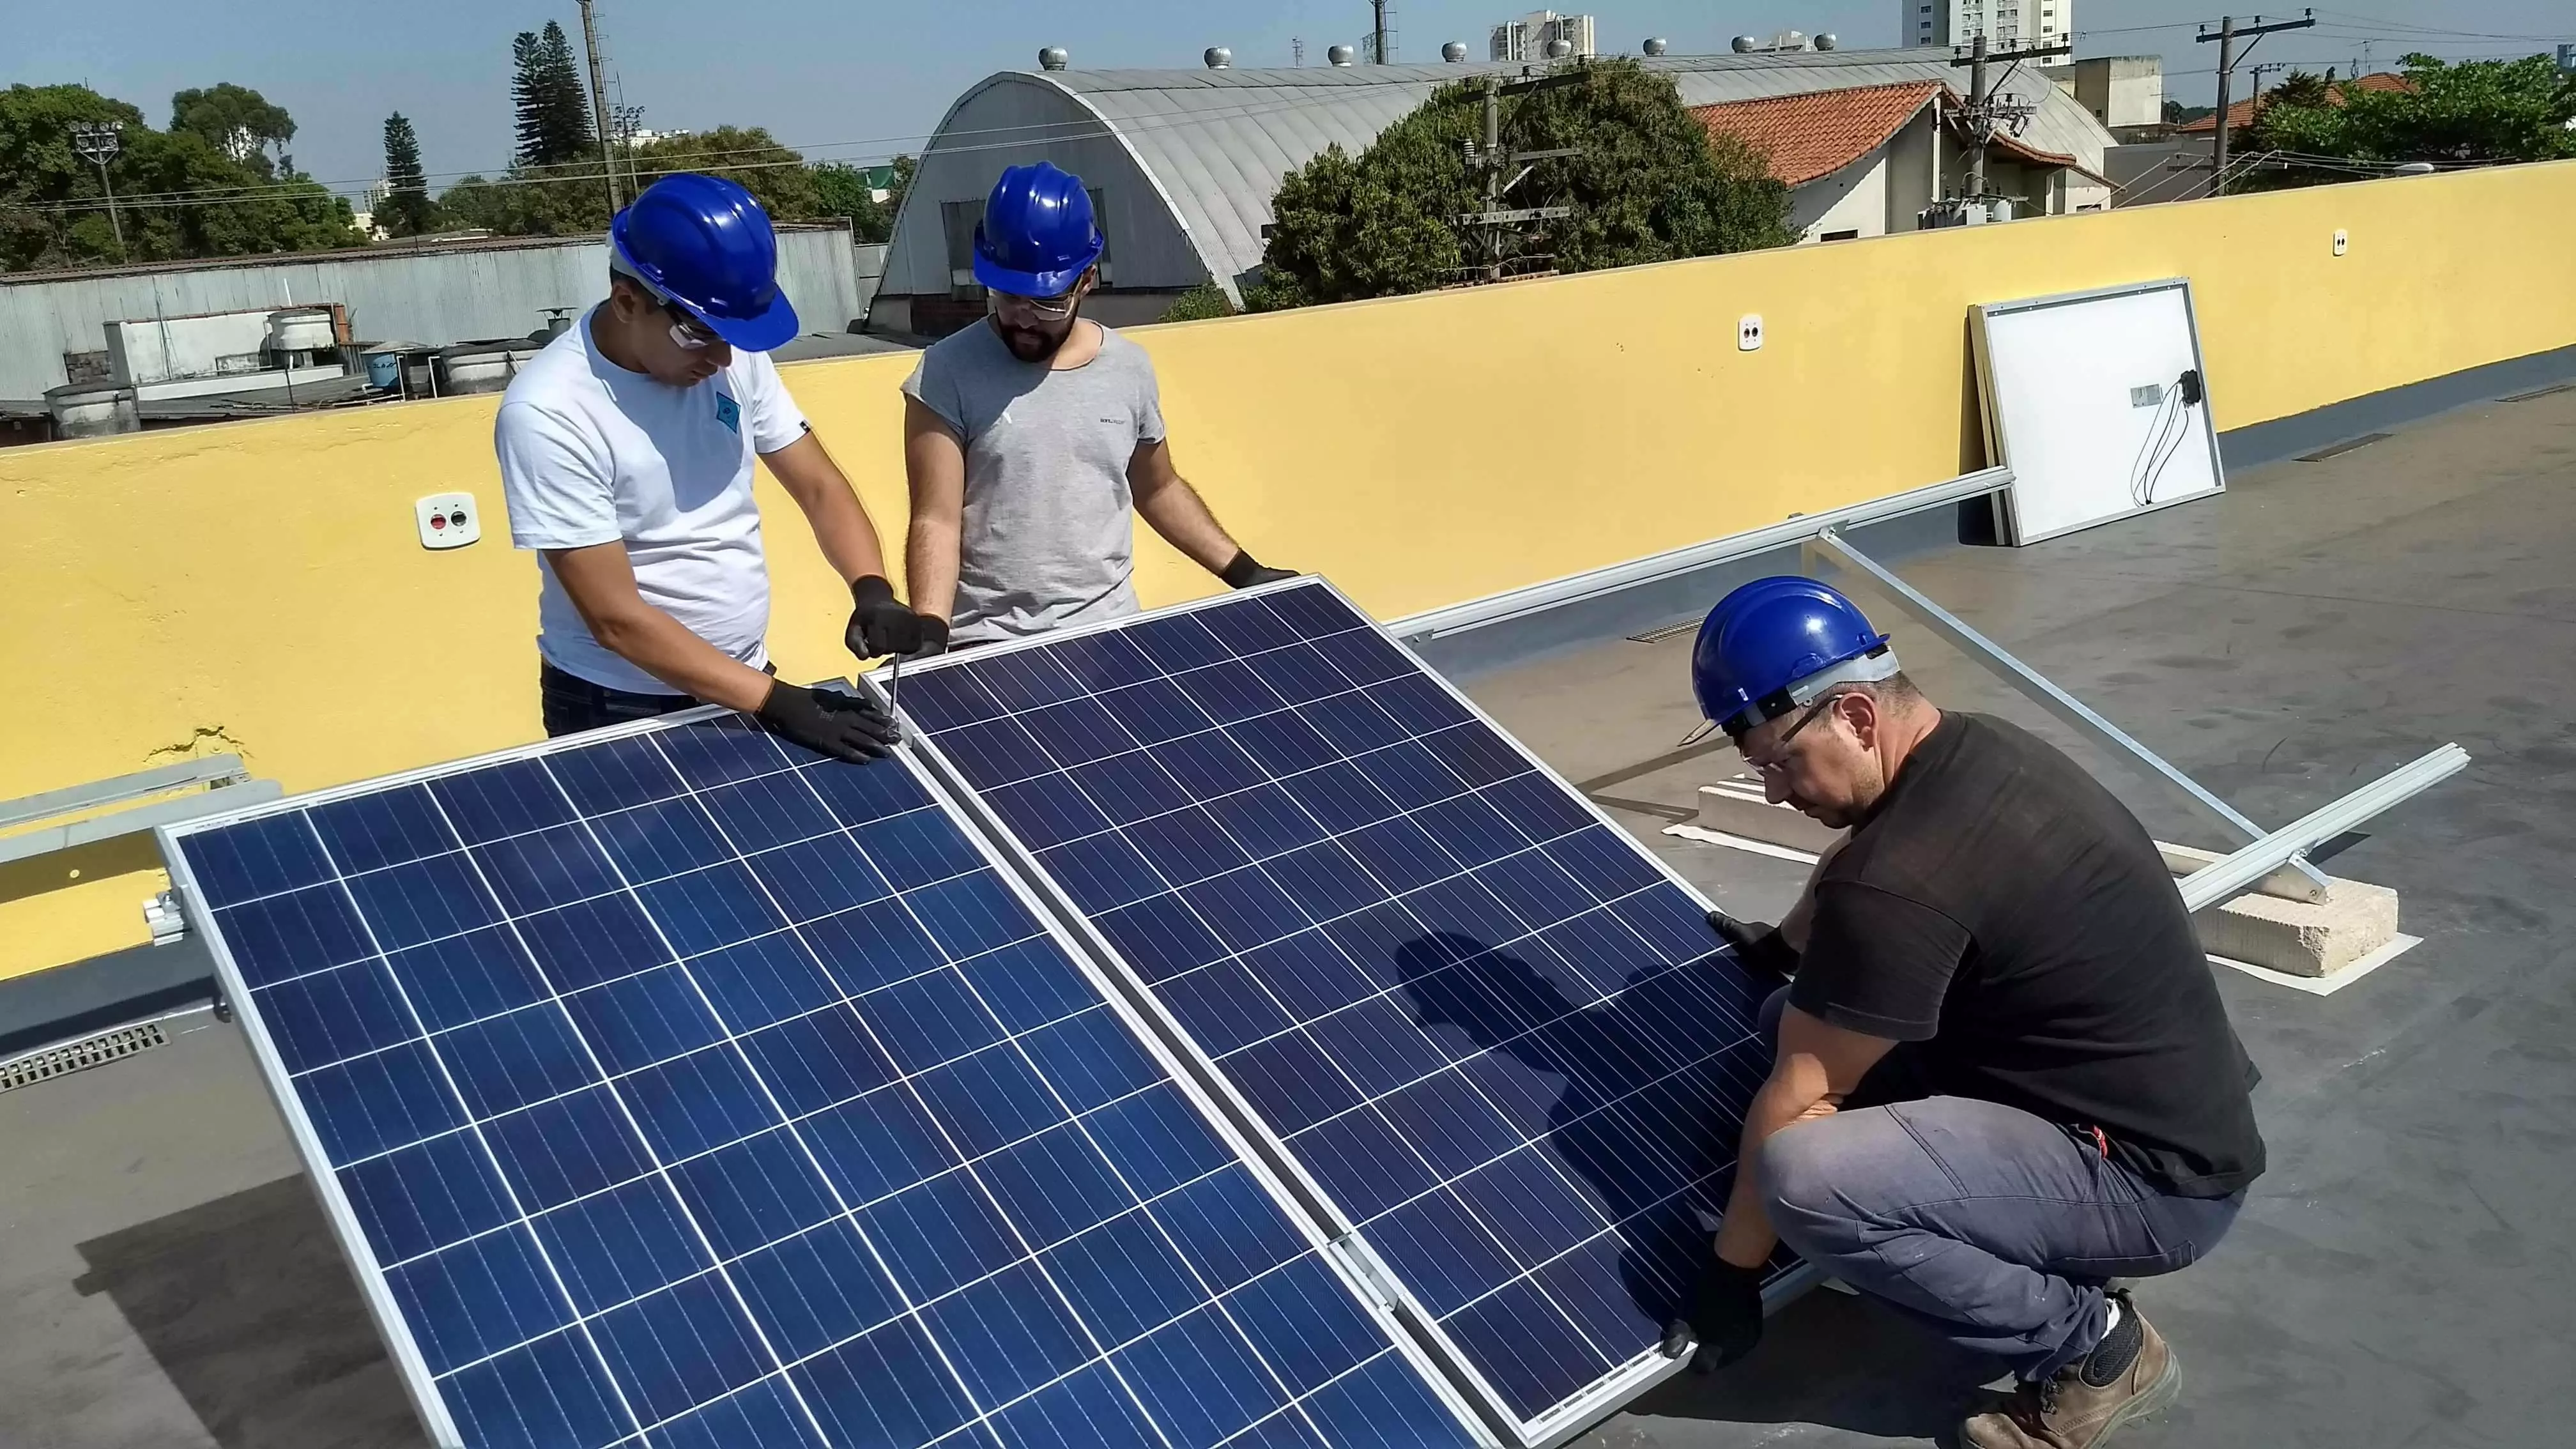 Instalação de Energia Solar Fotovoltaica em índustrias - 1